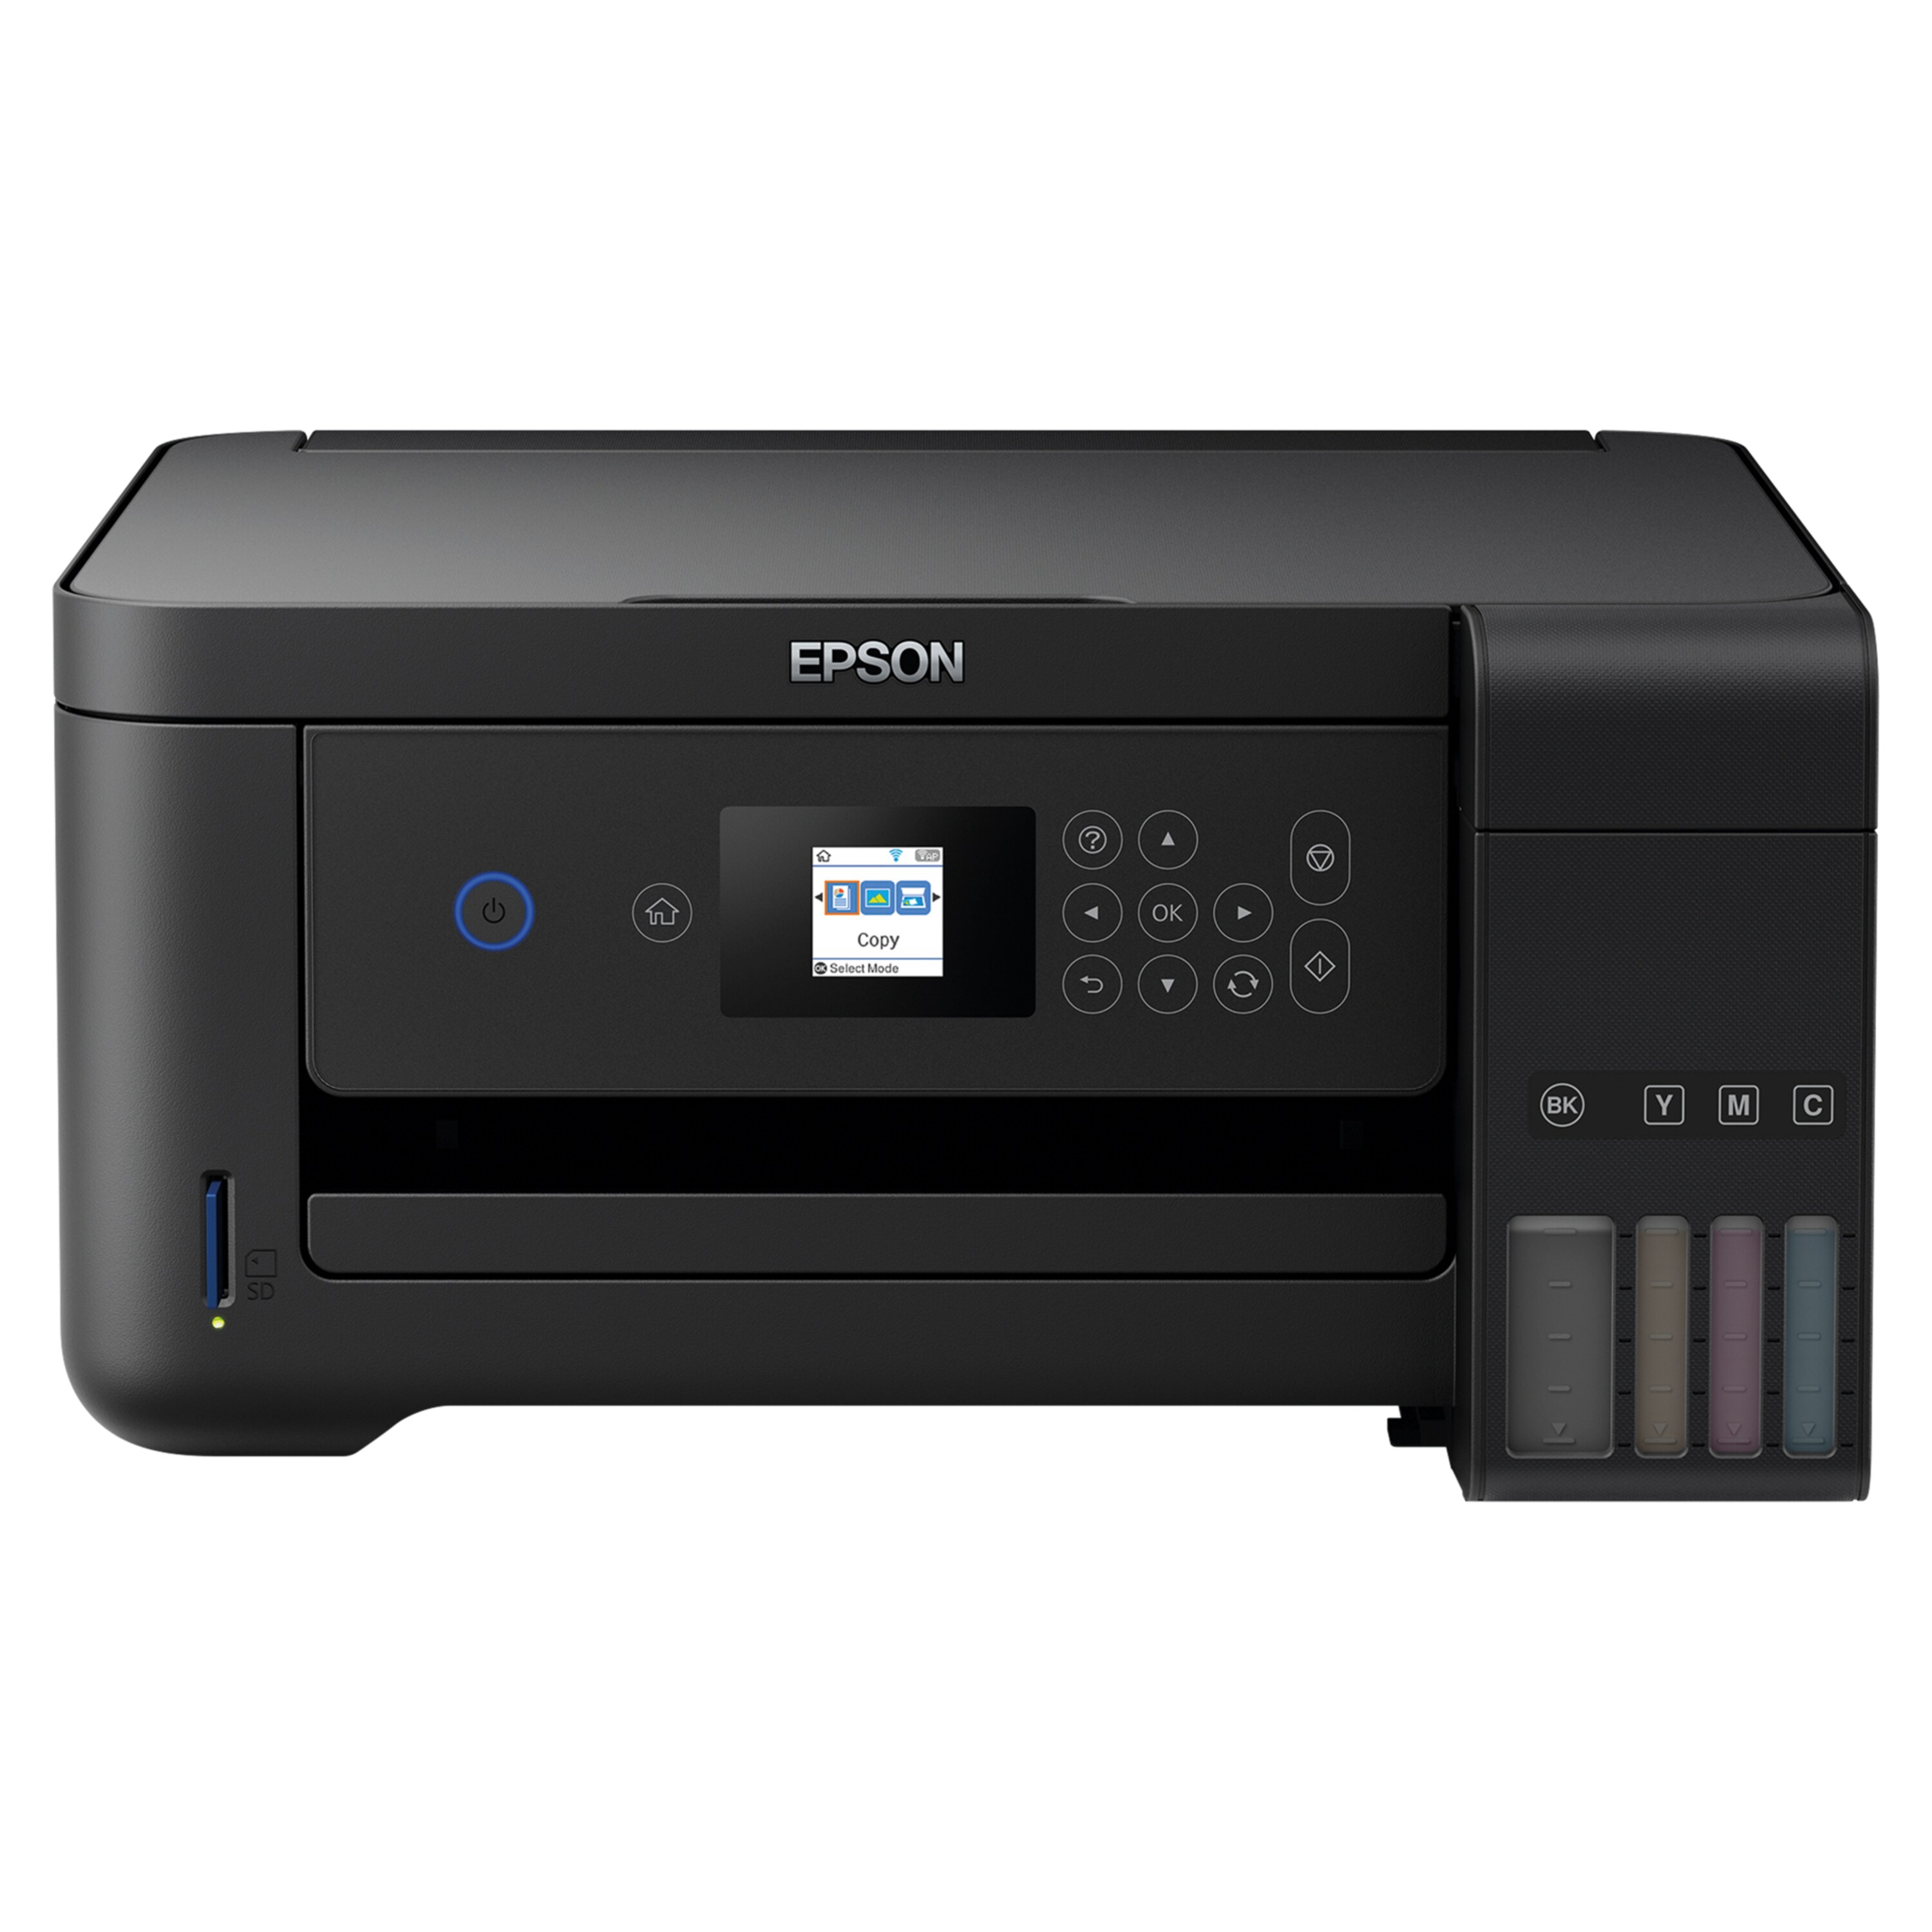 EPSON EcoTank ET-2750 3-in-1 Tintenstrahldrucker, WiFi und Apps, Drucken, Scannen und Kopieren, Duplex, großvolumiger Tintentank